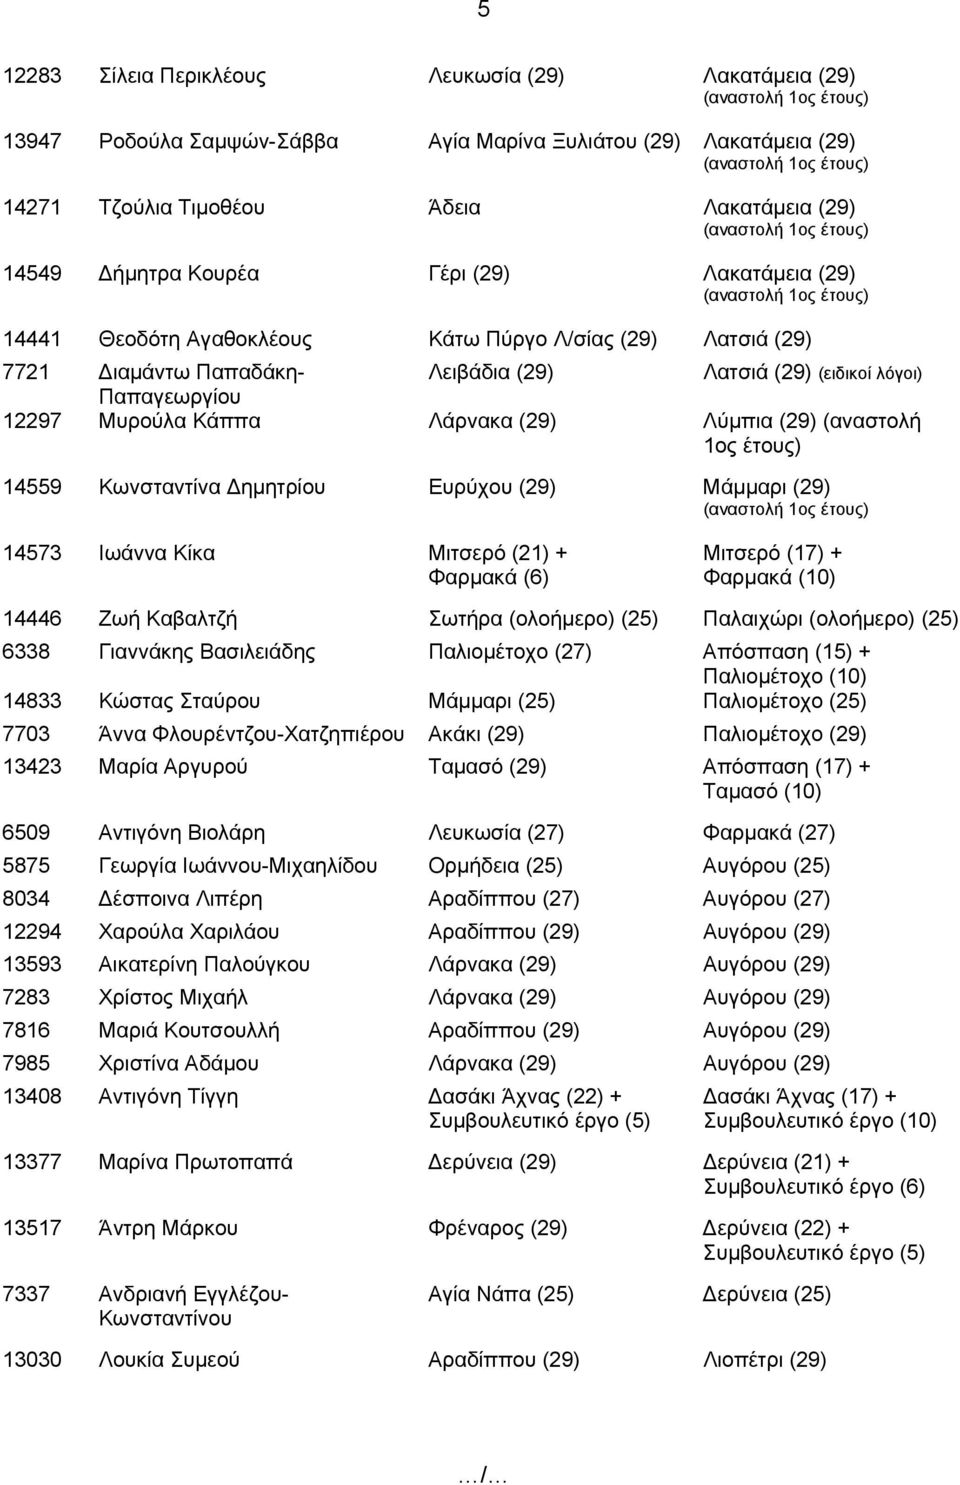 Λύμπια (29) (αναστολή 1ος έτους) 14559 Κωνσταντίνα Δημητρίου Ευρύχου (29) Μάμμαρι (29) 14573 Ιωάννα Κίκα Μιτσερό (21) + Φαρμακά (6) Μιτσερό (17) + Φαρμακά (10) 14446 Ζωή Καβαλτζή Σωτήρα (ολοήμερο)